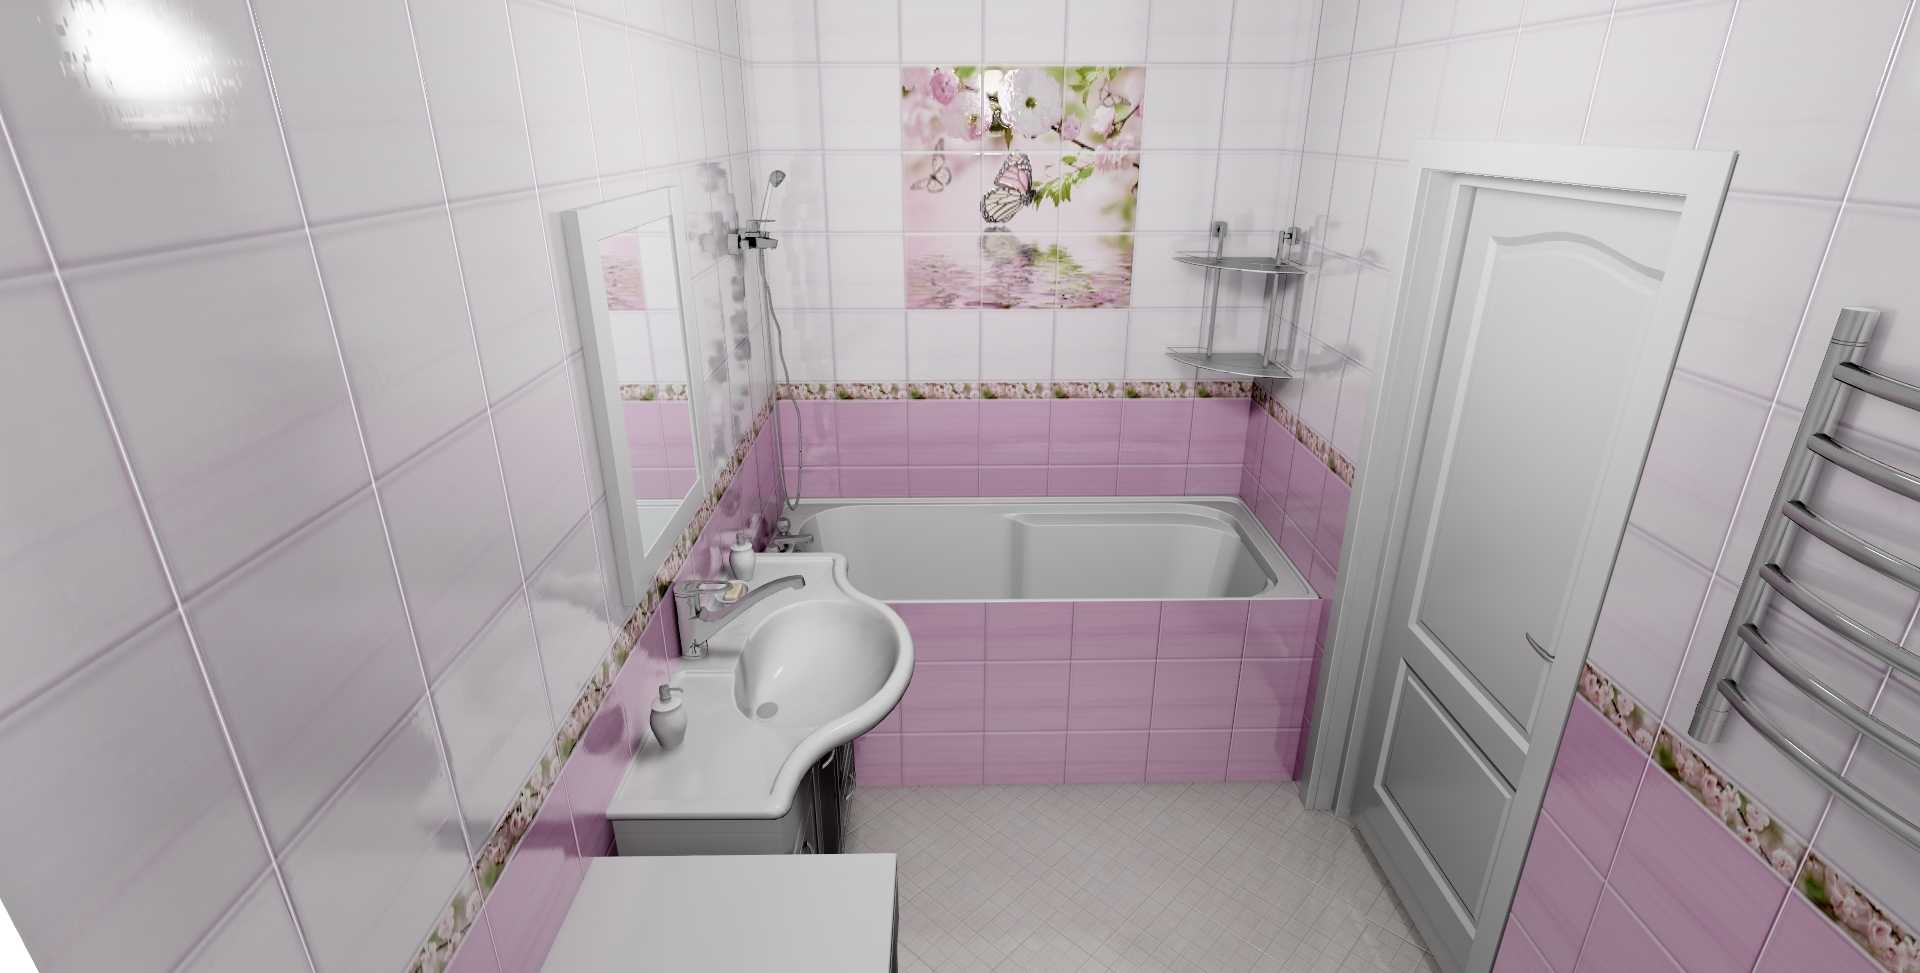 Фартук для ванной из пластика. пвх (виниловая) плитка для стен:фото новинок дизайна, идеи для сочетания, инструкция по укладке своими руками